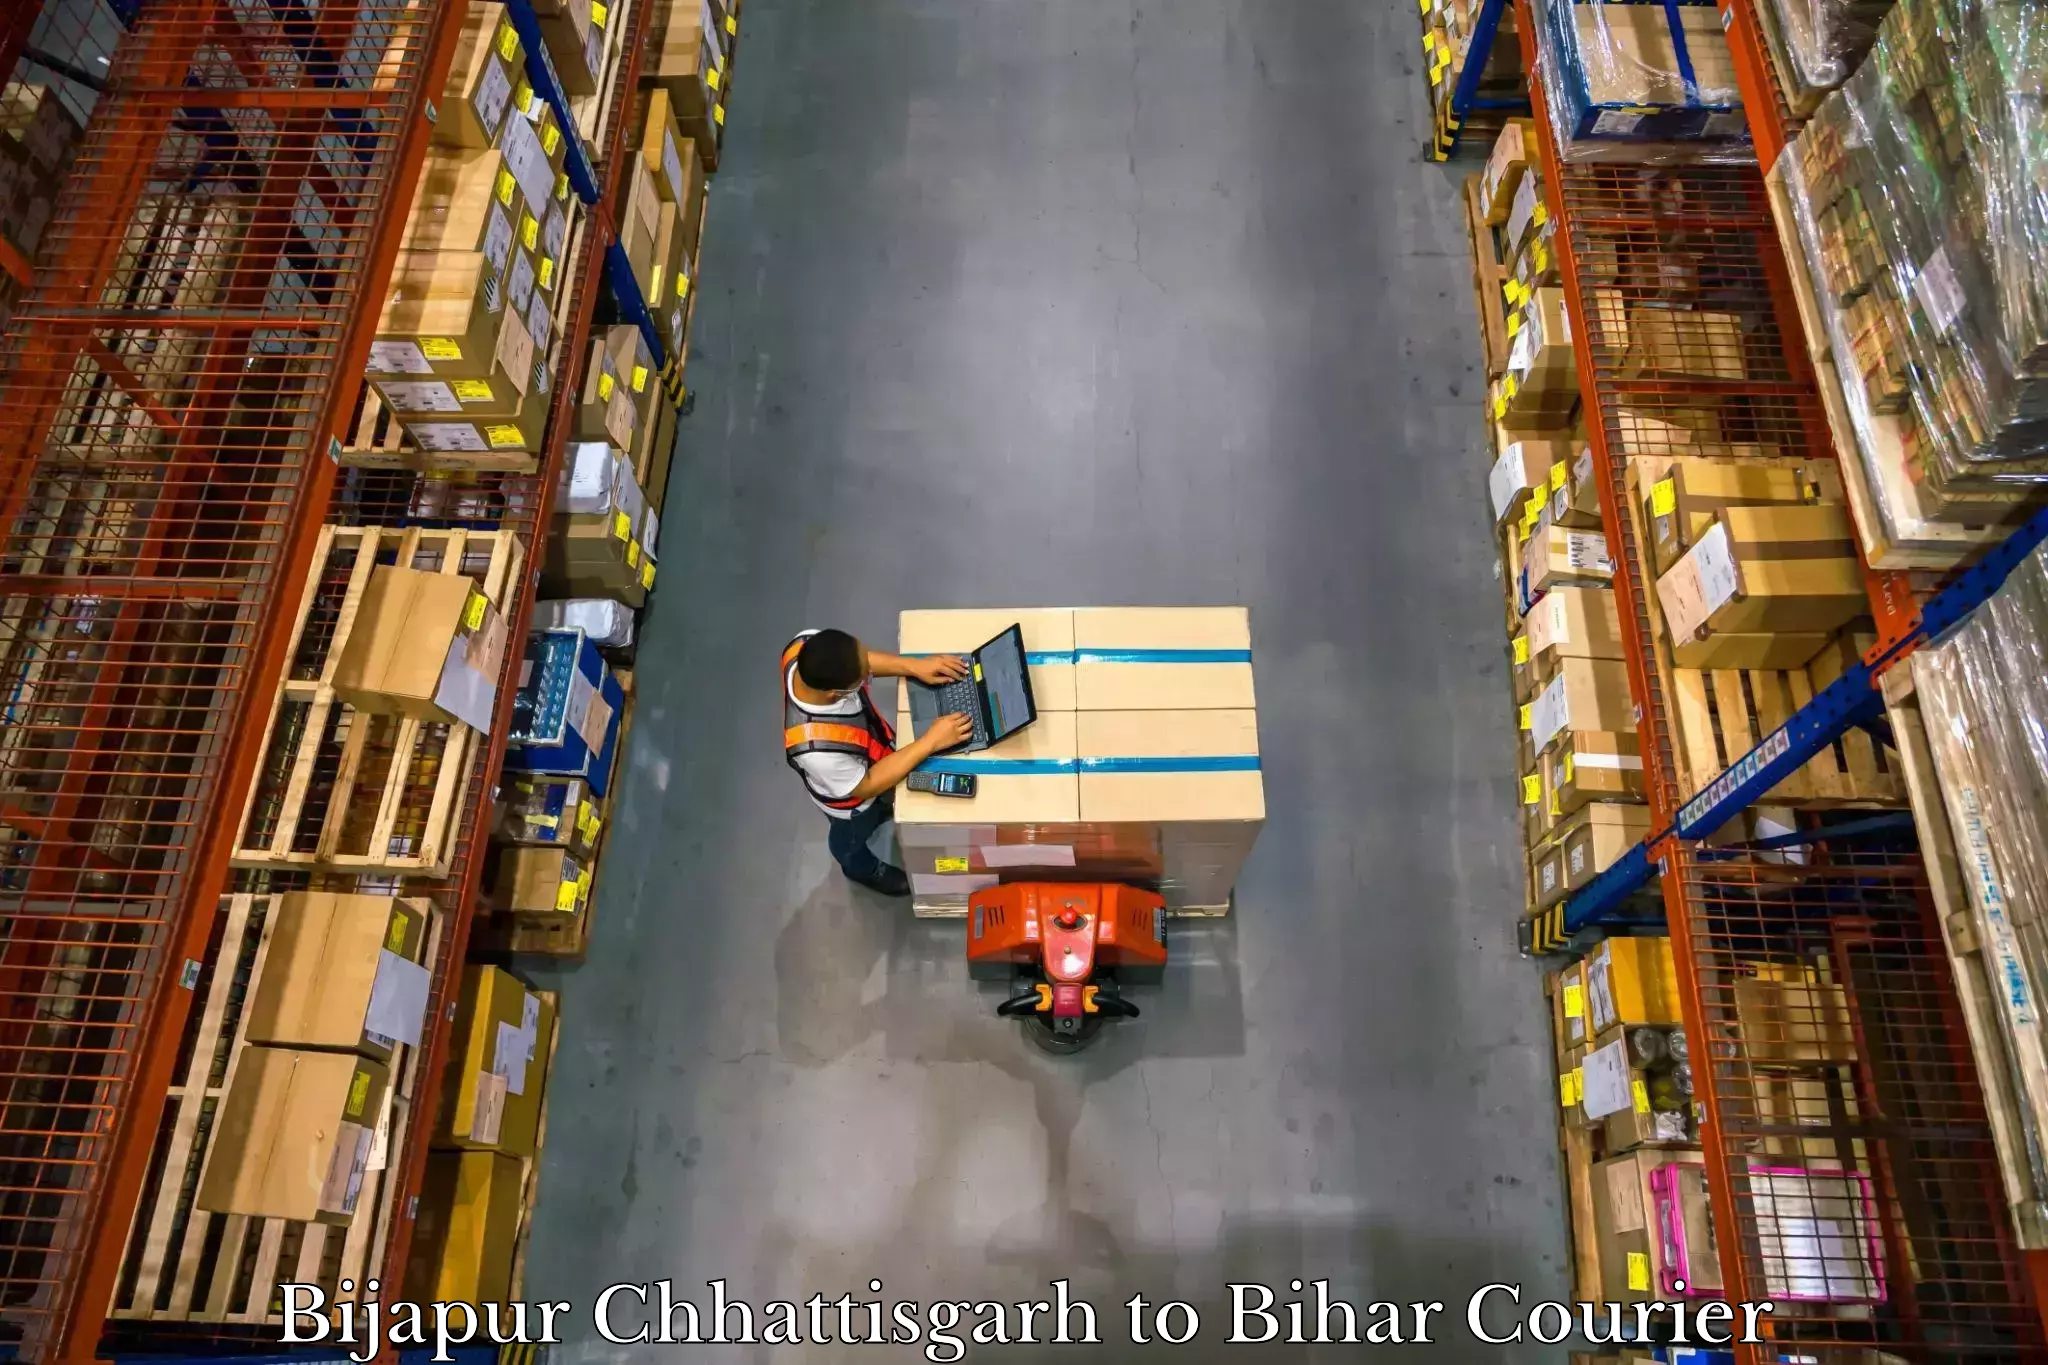 Baggage delivery optimization Bijapur Chhattisgarh to Mohania